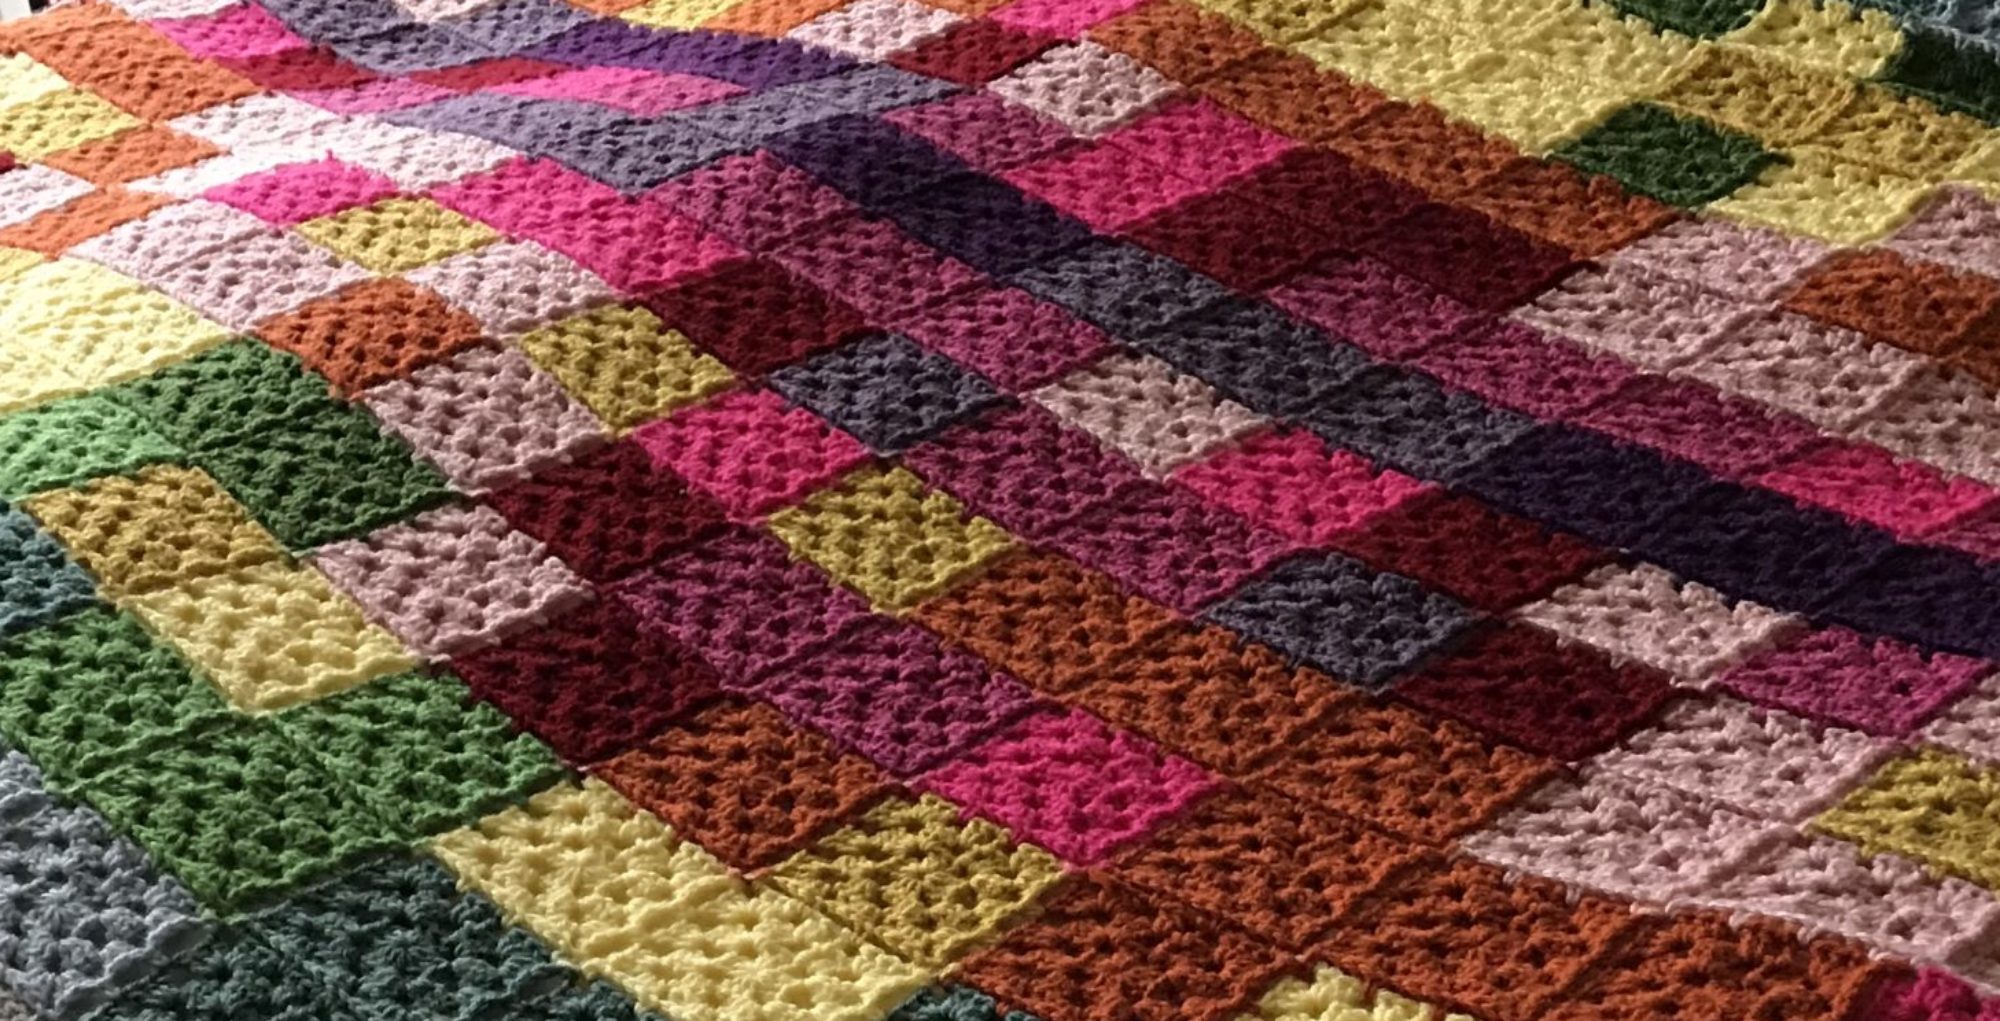 Crochet Temperature Blanket – Week 1 Progress